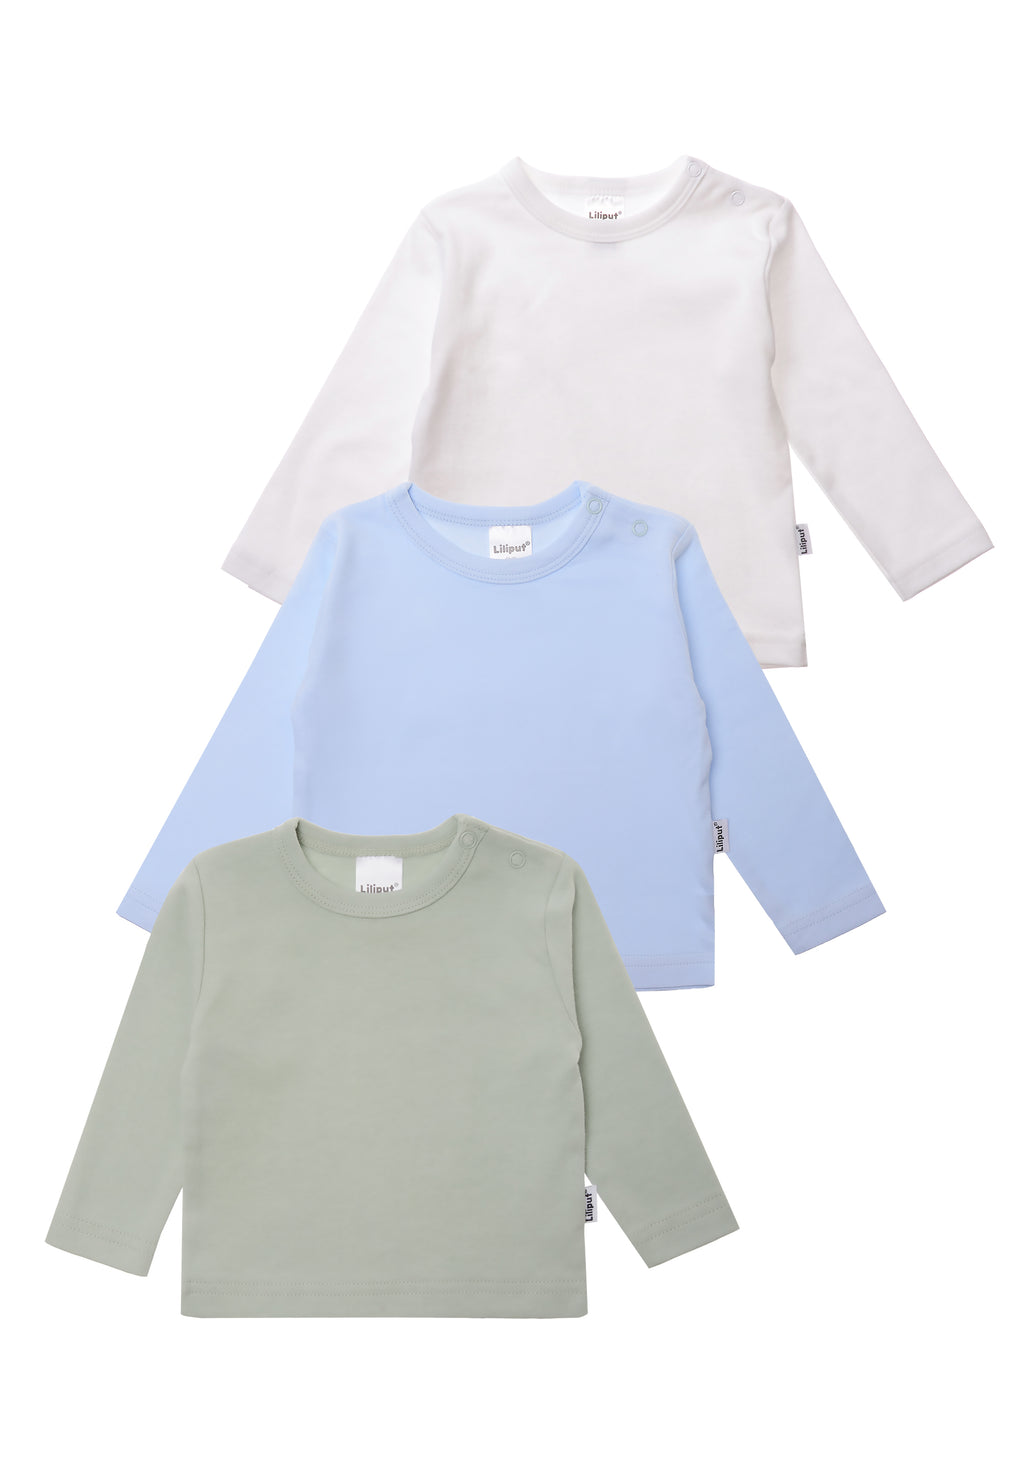 3er Pack Langarmshirts aus Baumwolle in schilf, weiß und hellblau.